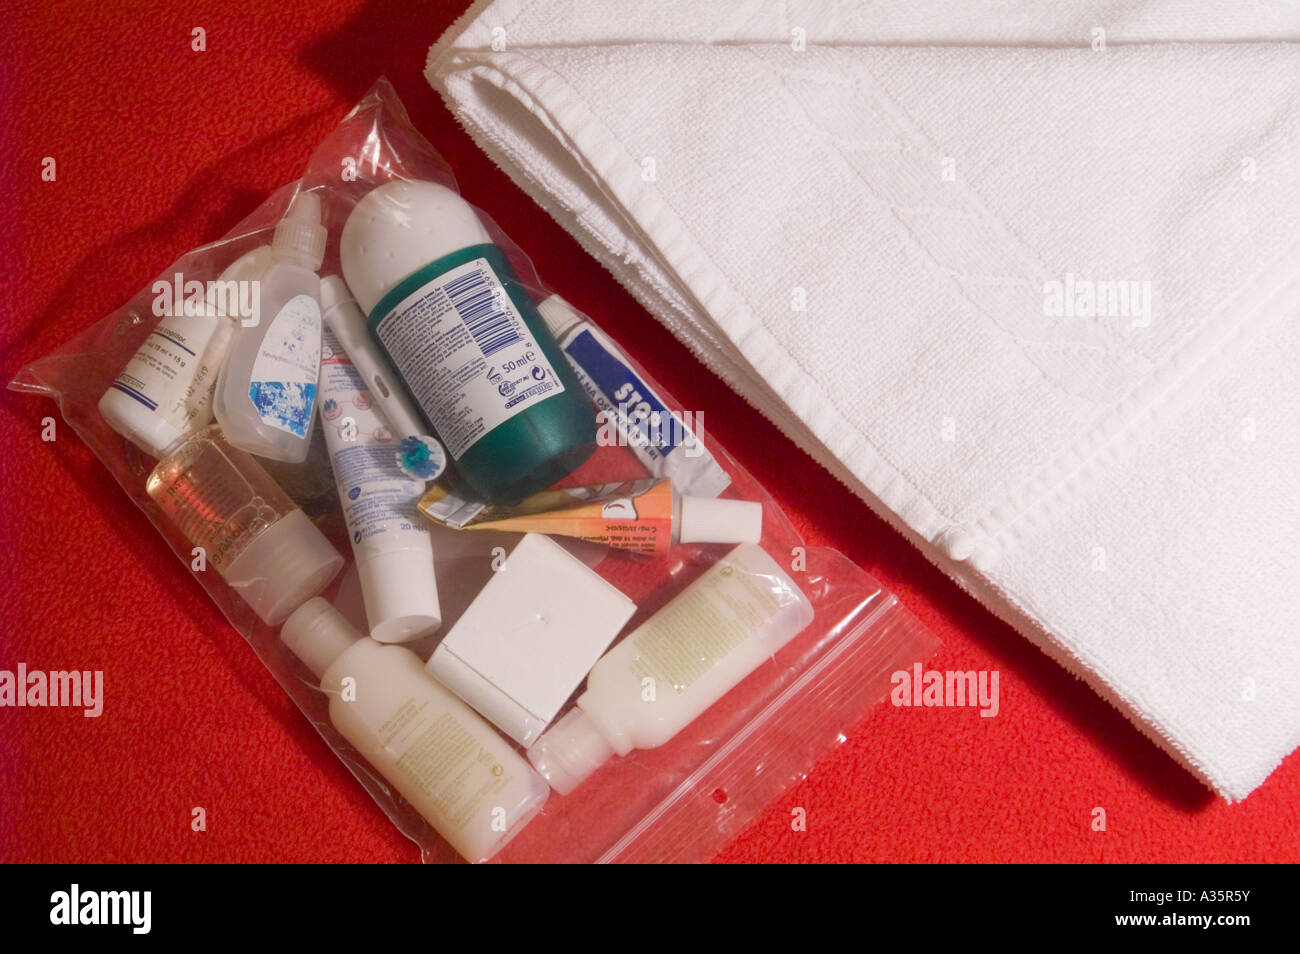 Verschließbaren Plastikbeutel mit Flüssigkeiten und Gels im Handgepäck  Stockfotografie - Alamy